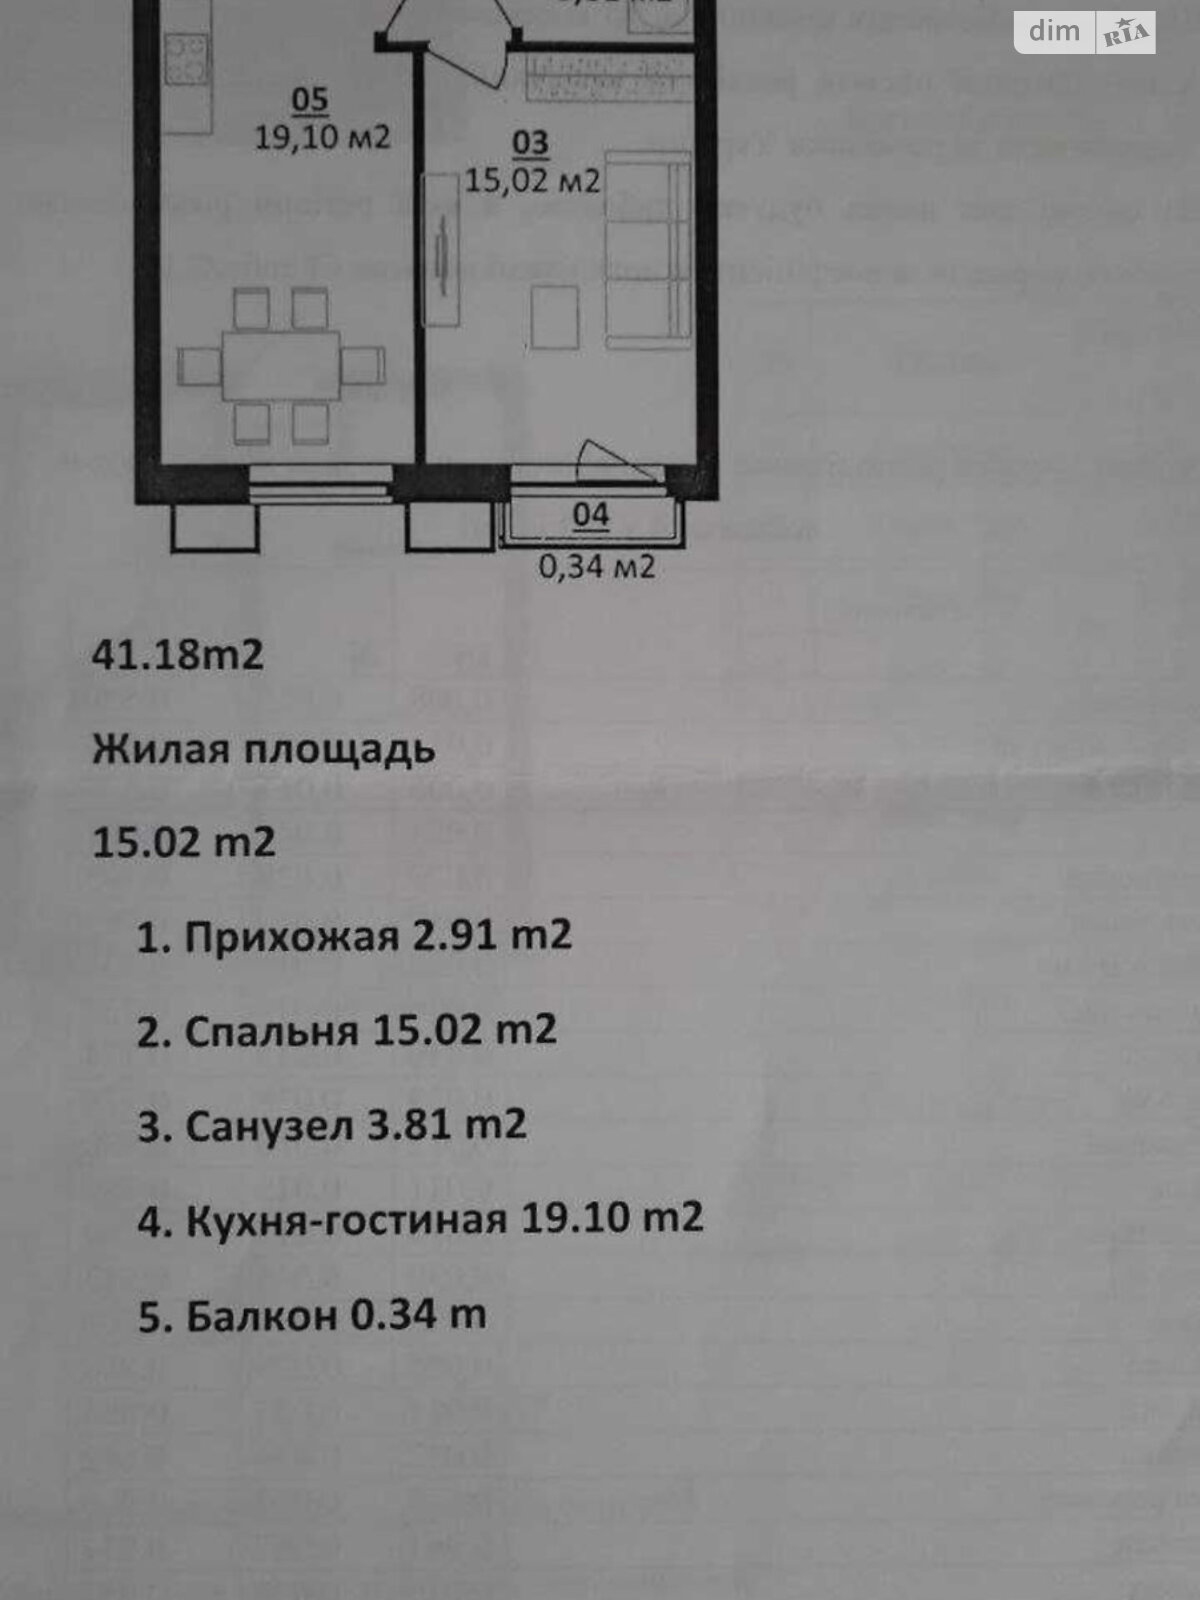 Продажа однокомнатной квартиры в Белогородке, на ул. Михаила Величко 40/1, фото 1